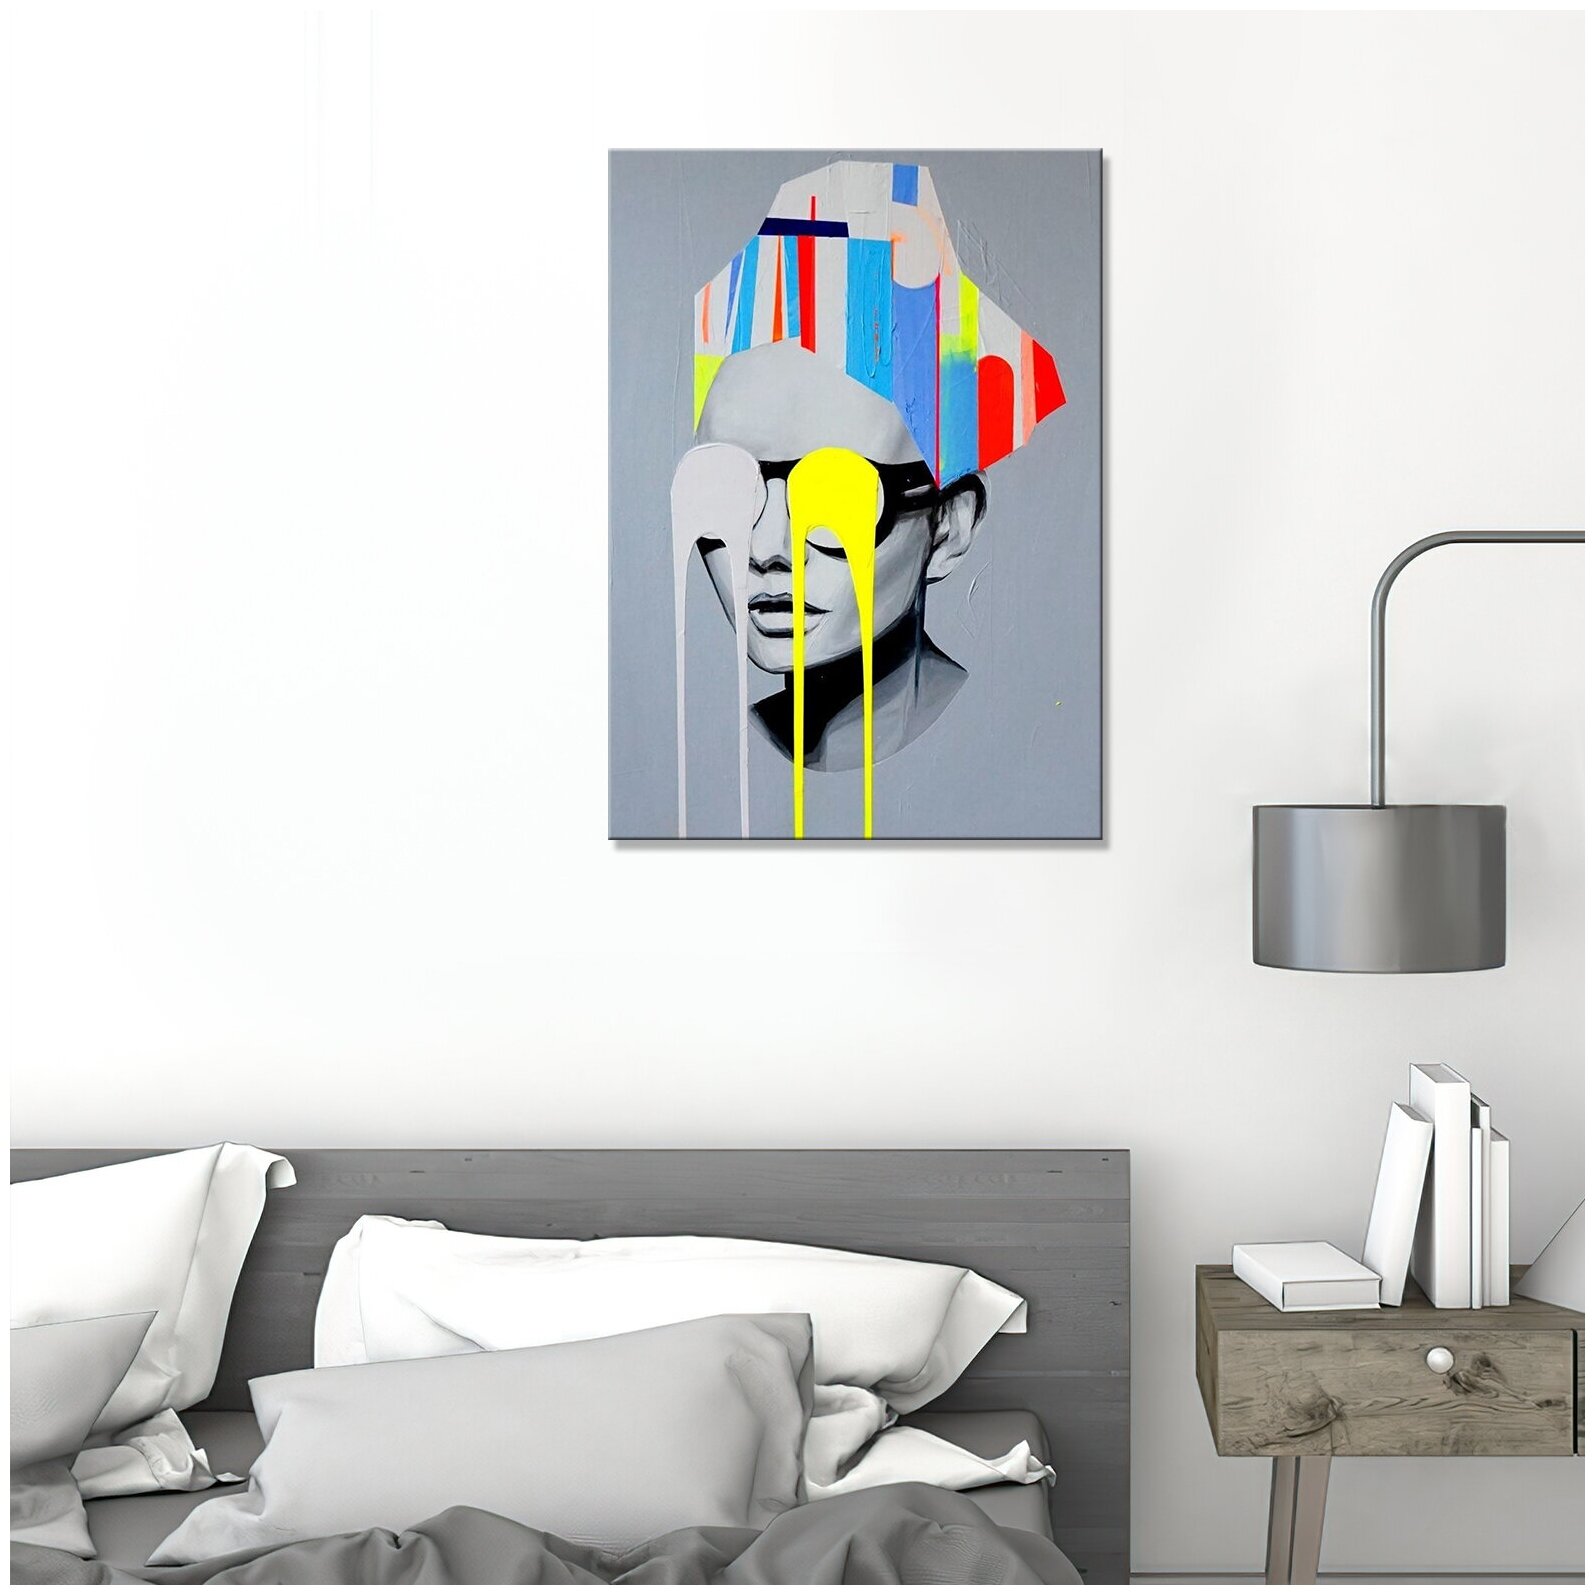 Интерьерная картина на холсте/ картина на стену/ в гостиную /спальню/ - Девушка в очках серый арт с яркими акцентами 60х80